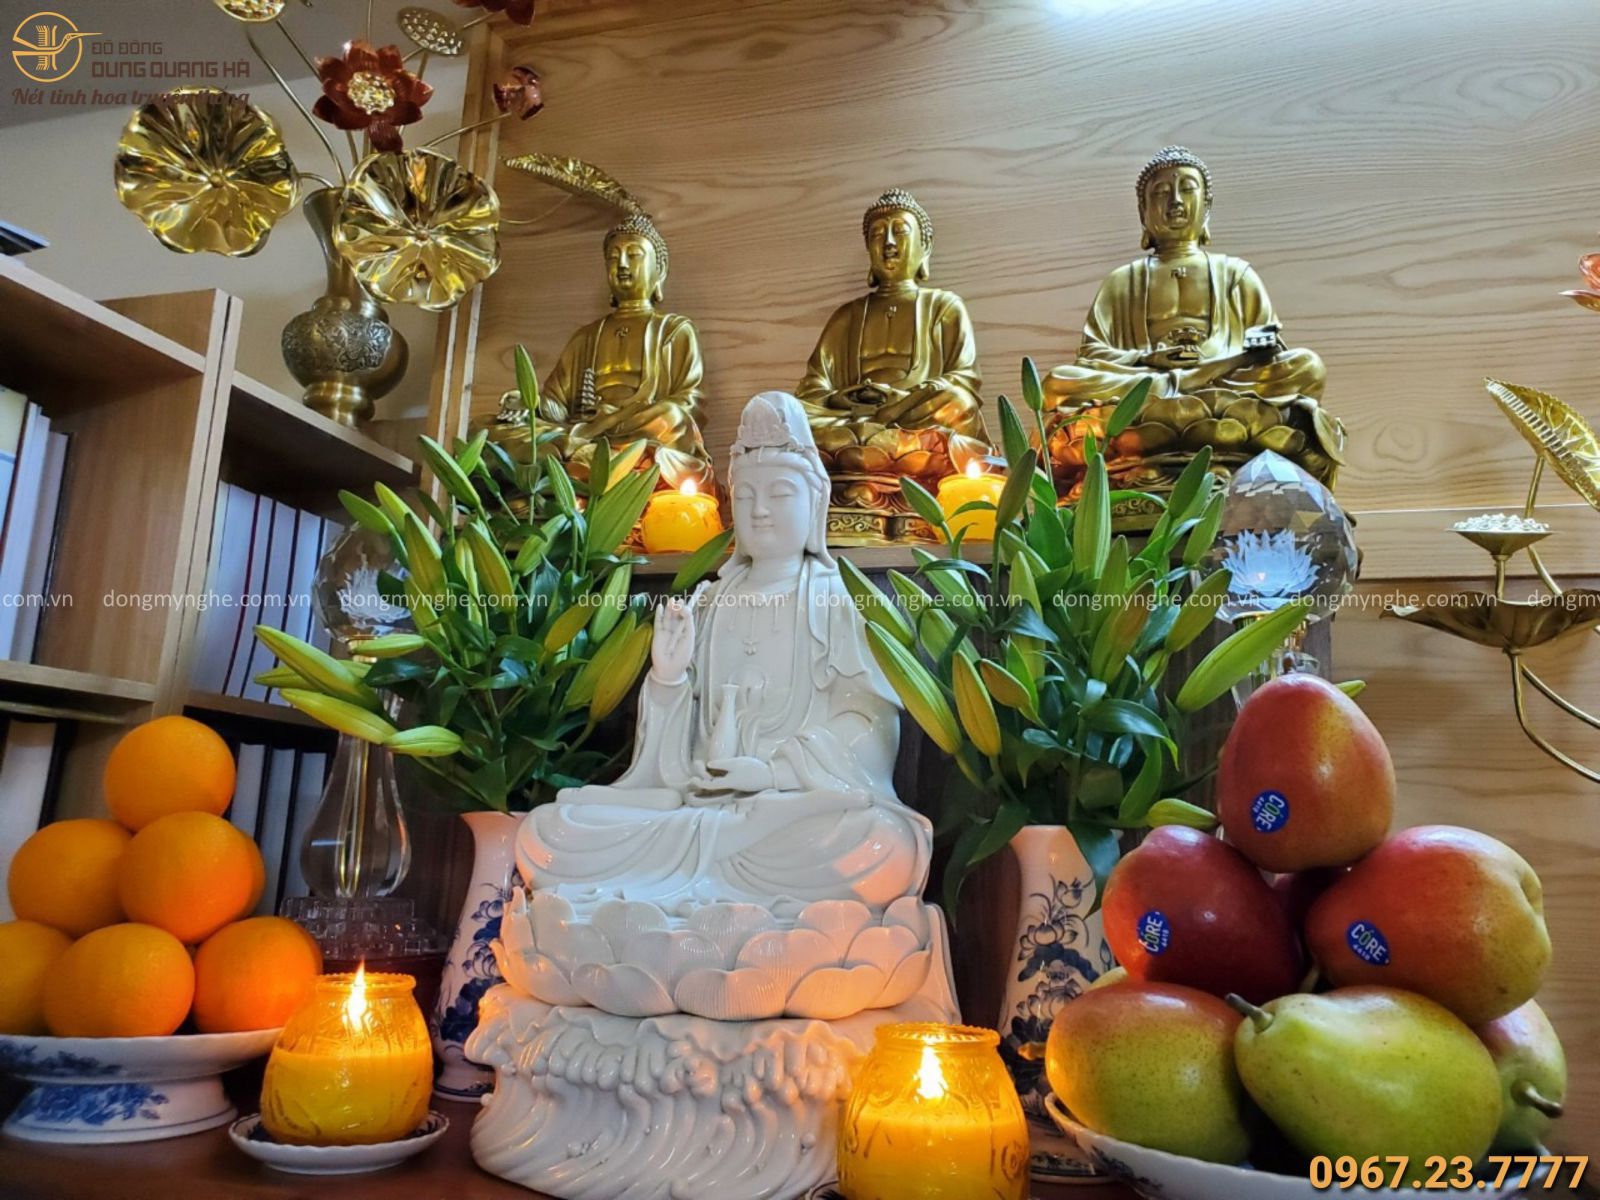 Sắp xếp tượng Phật tại nhà trở nên dễ dàng hơn bao giờ hết với cách thức đơn giản nhưng lại rất đầy ý nghĩa để chúng ta tôn kính và coi trọng Phật Giáo. Việc này mang lại sự thanh lọc cho gia đình, giúp bạn có thể tập trung vào những hoạt động thiêng liêng và khiêm nhường.